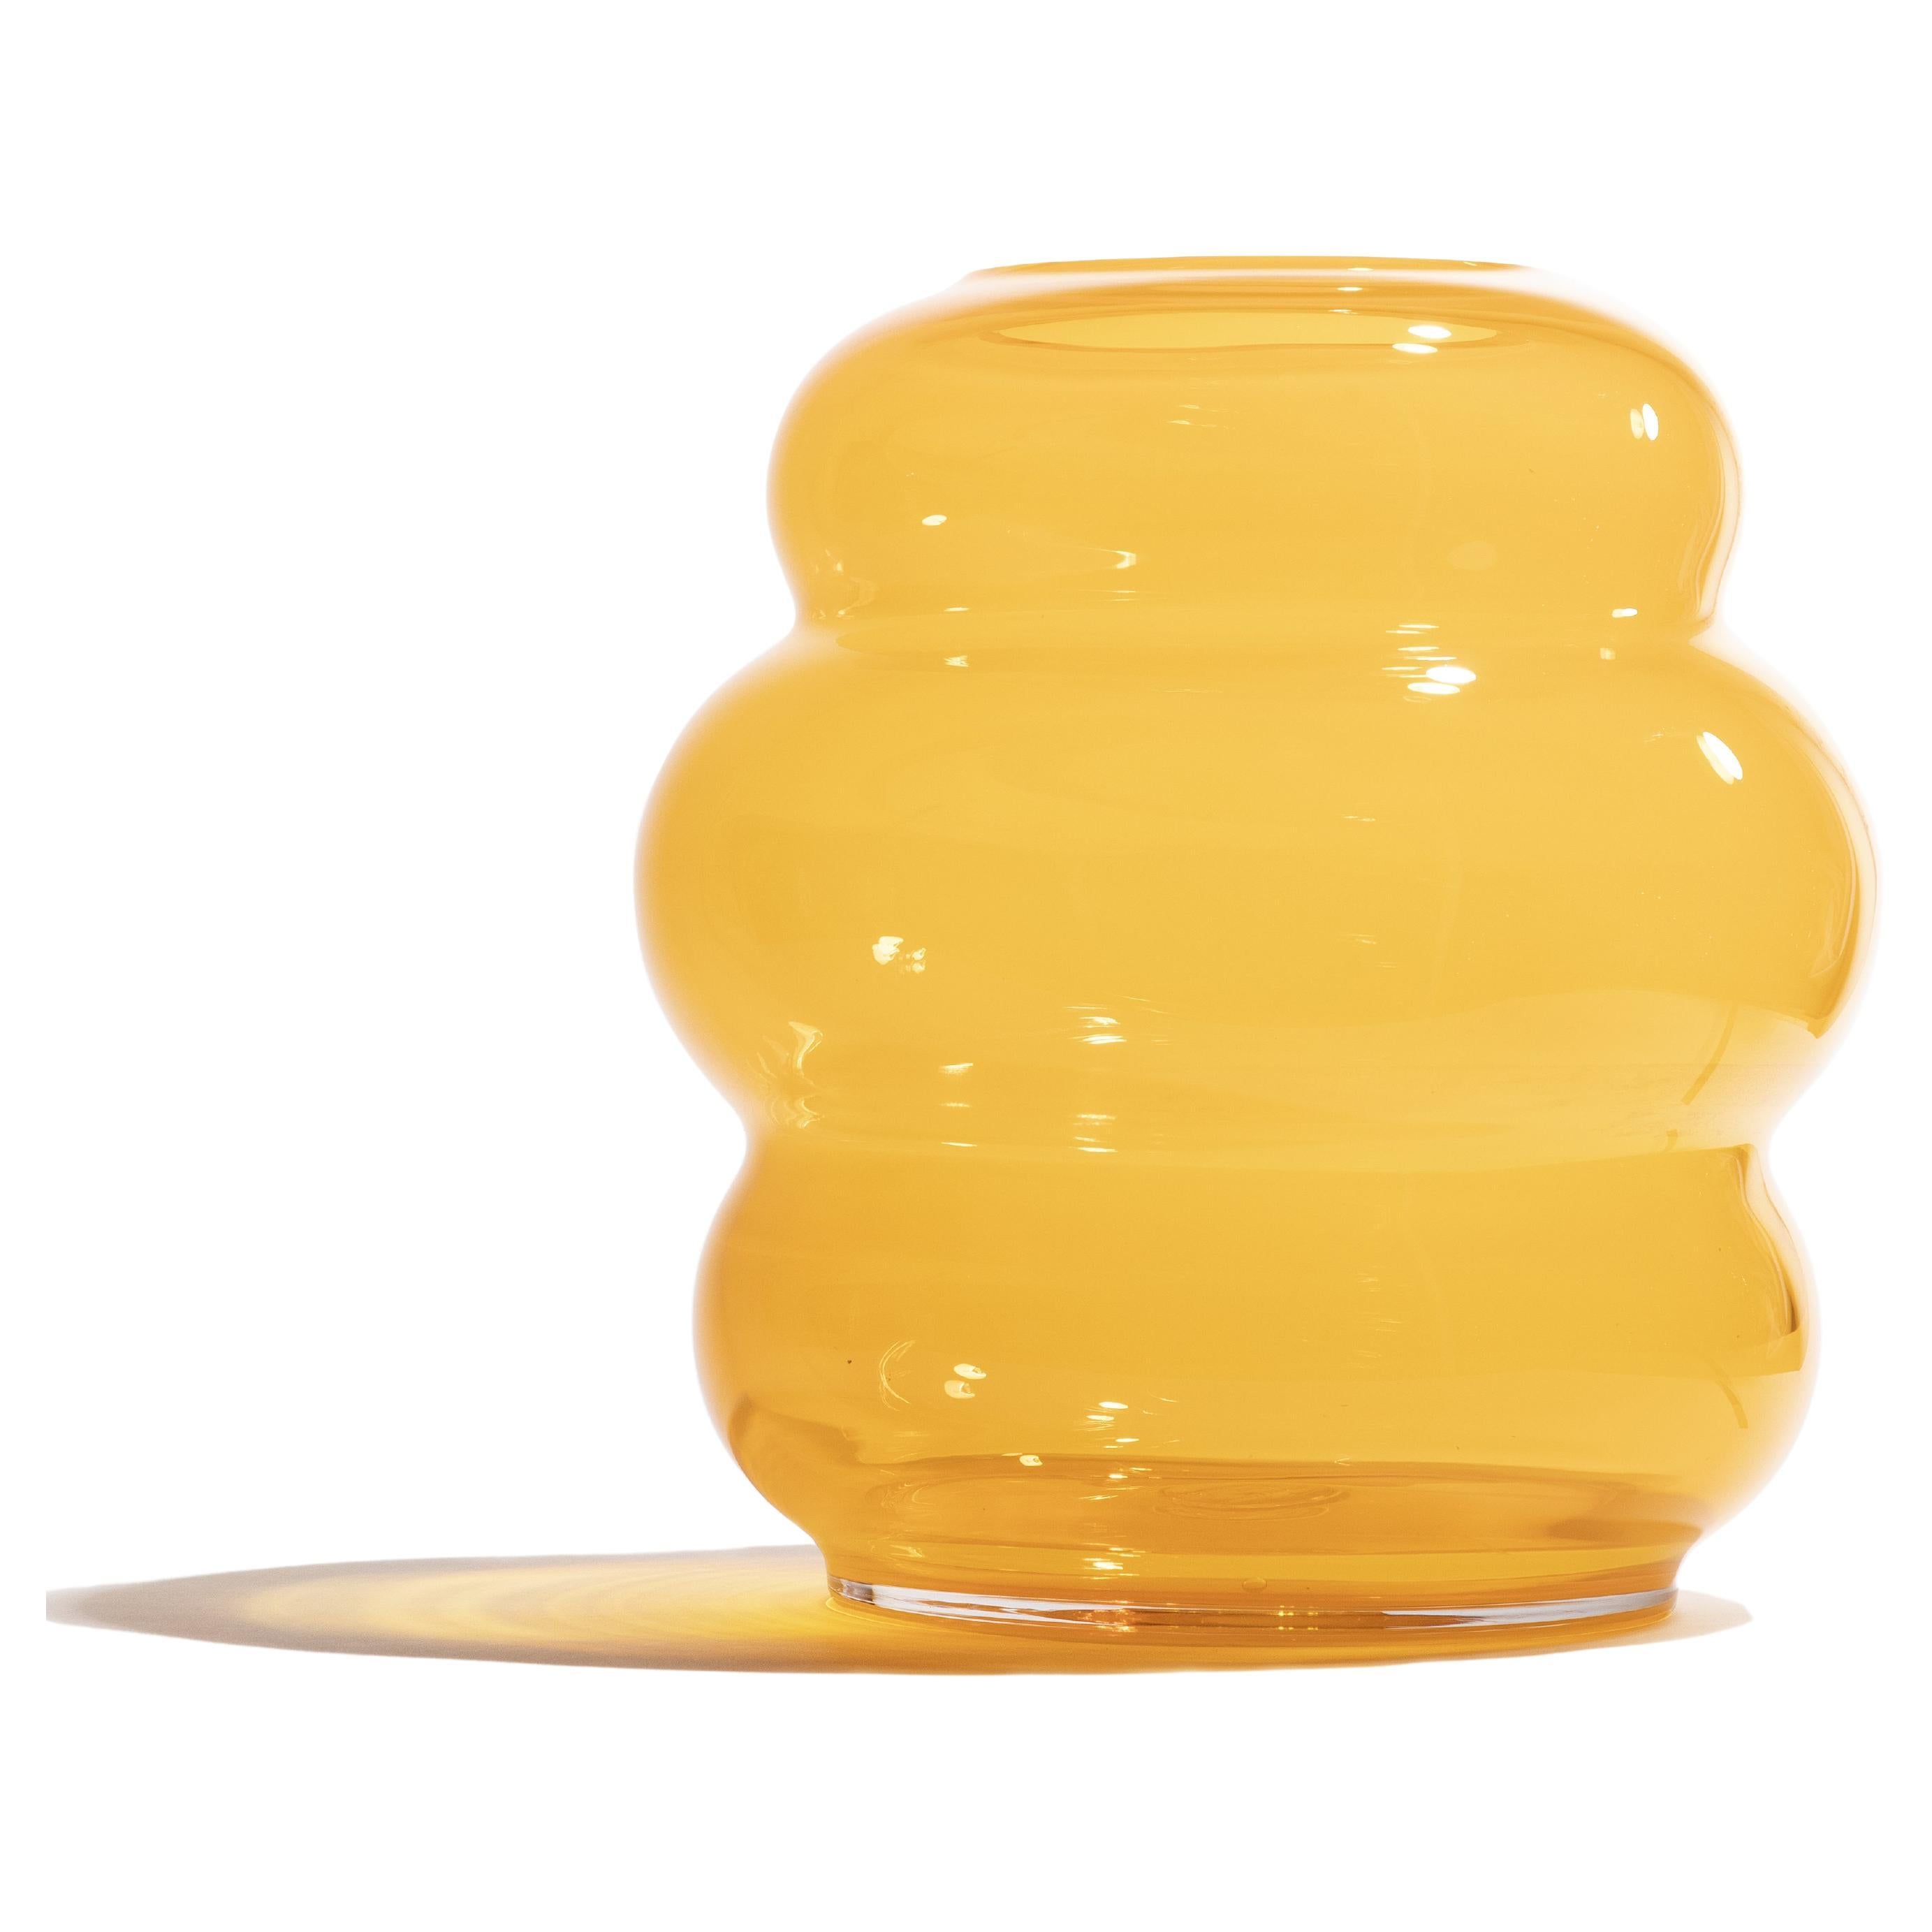 MUSE XL Saffron: Bohemian crystal glass vases with unique curves